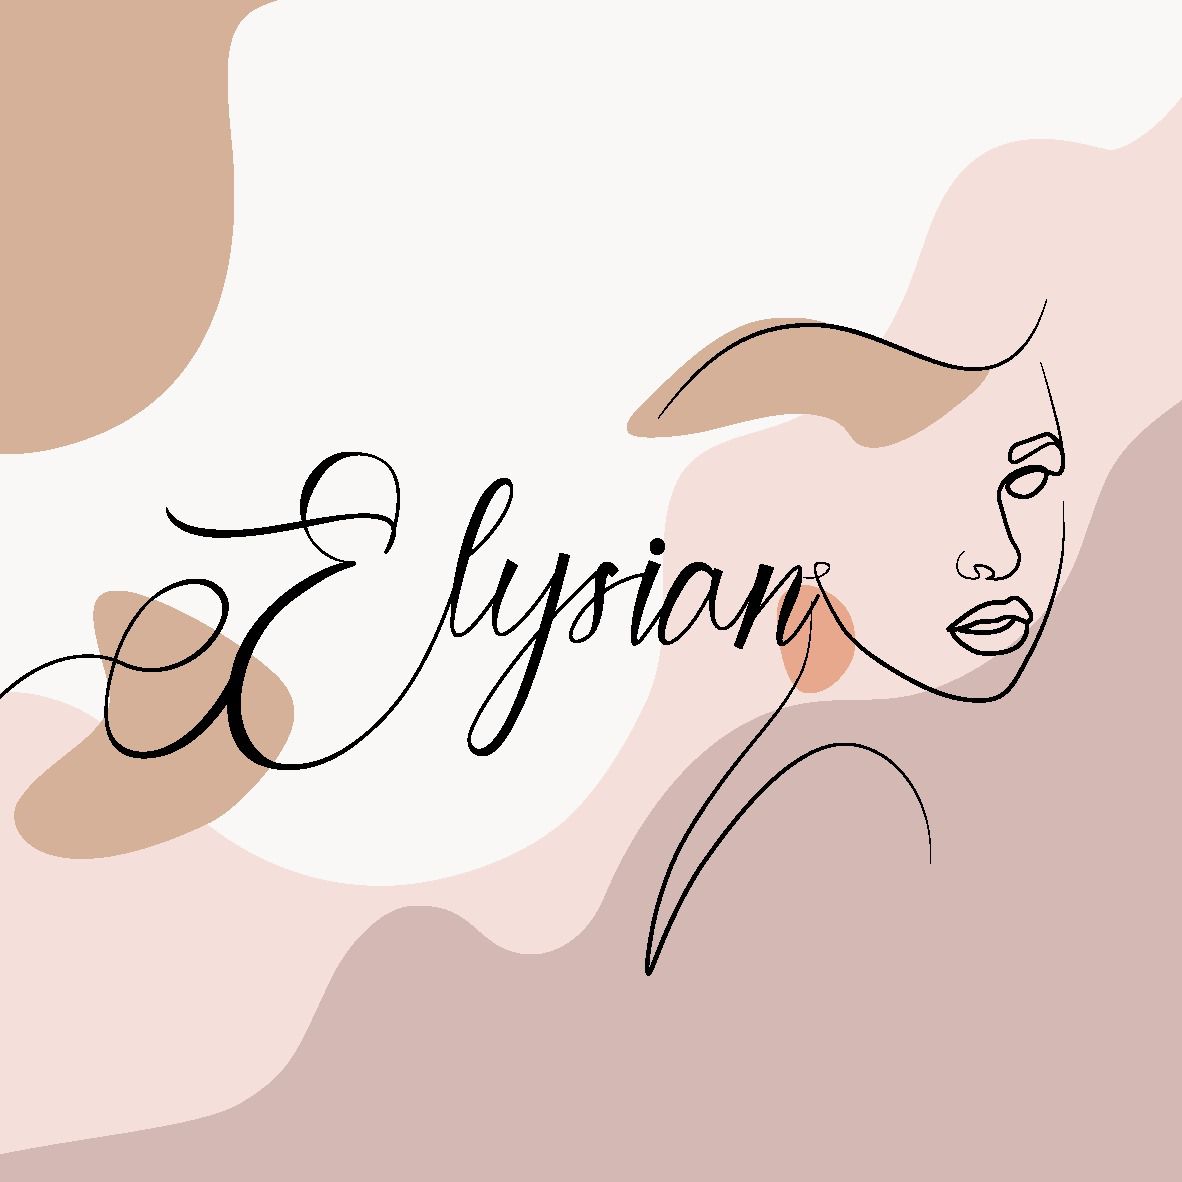 Elysian_bymaya